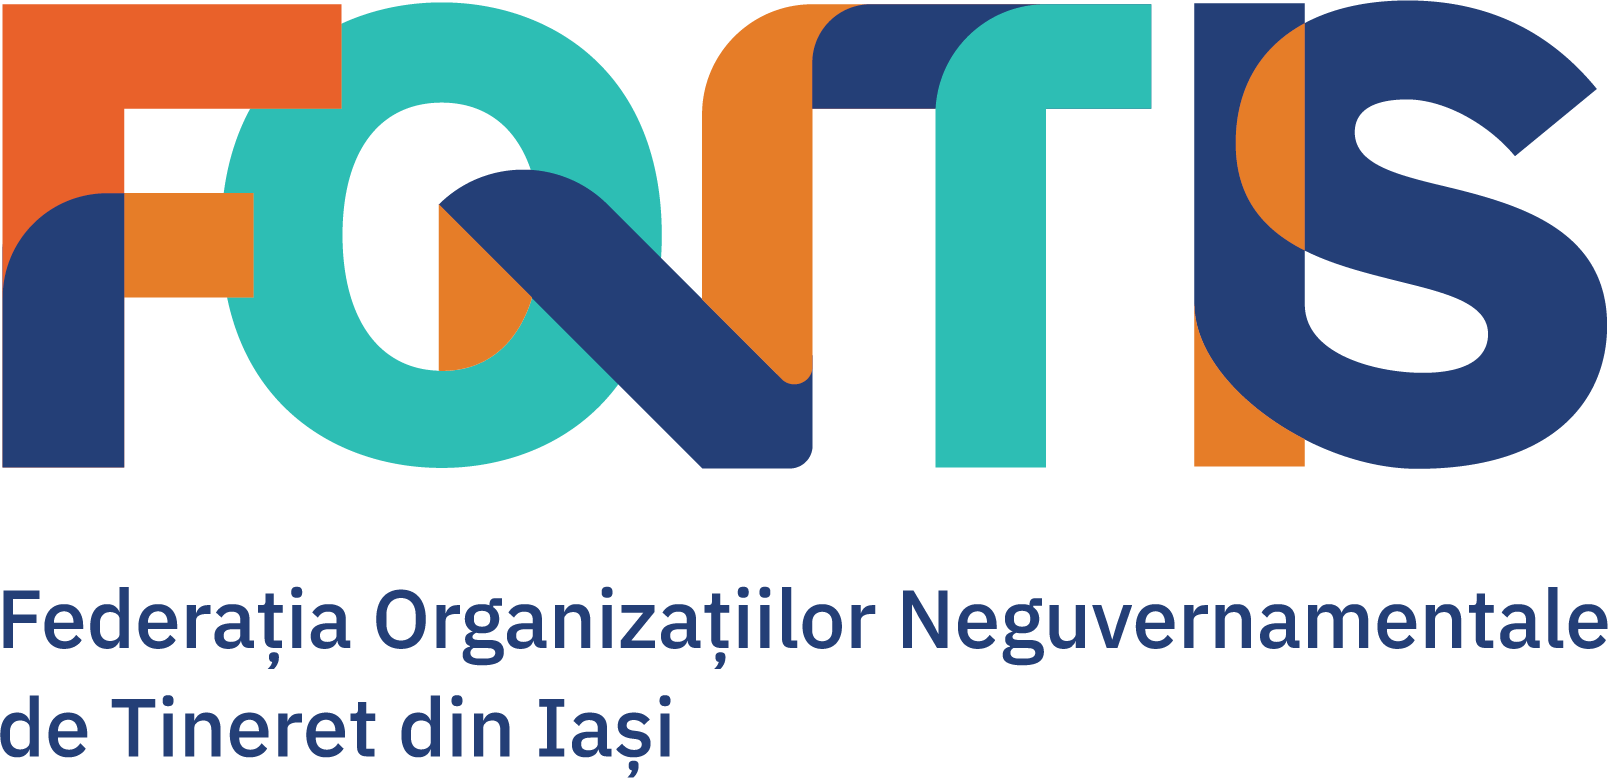 Federația Organizațiilor Neguvernamentale de Tineret din Iași - FONTIS  logo